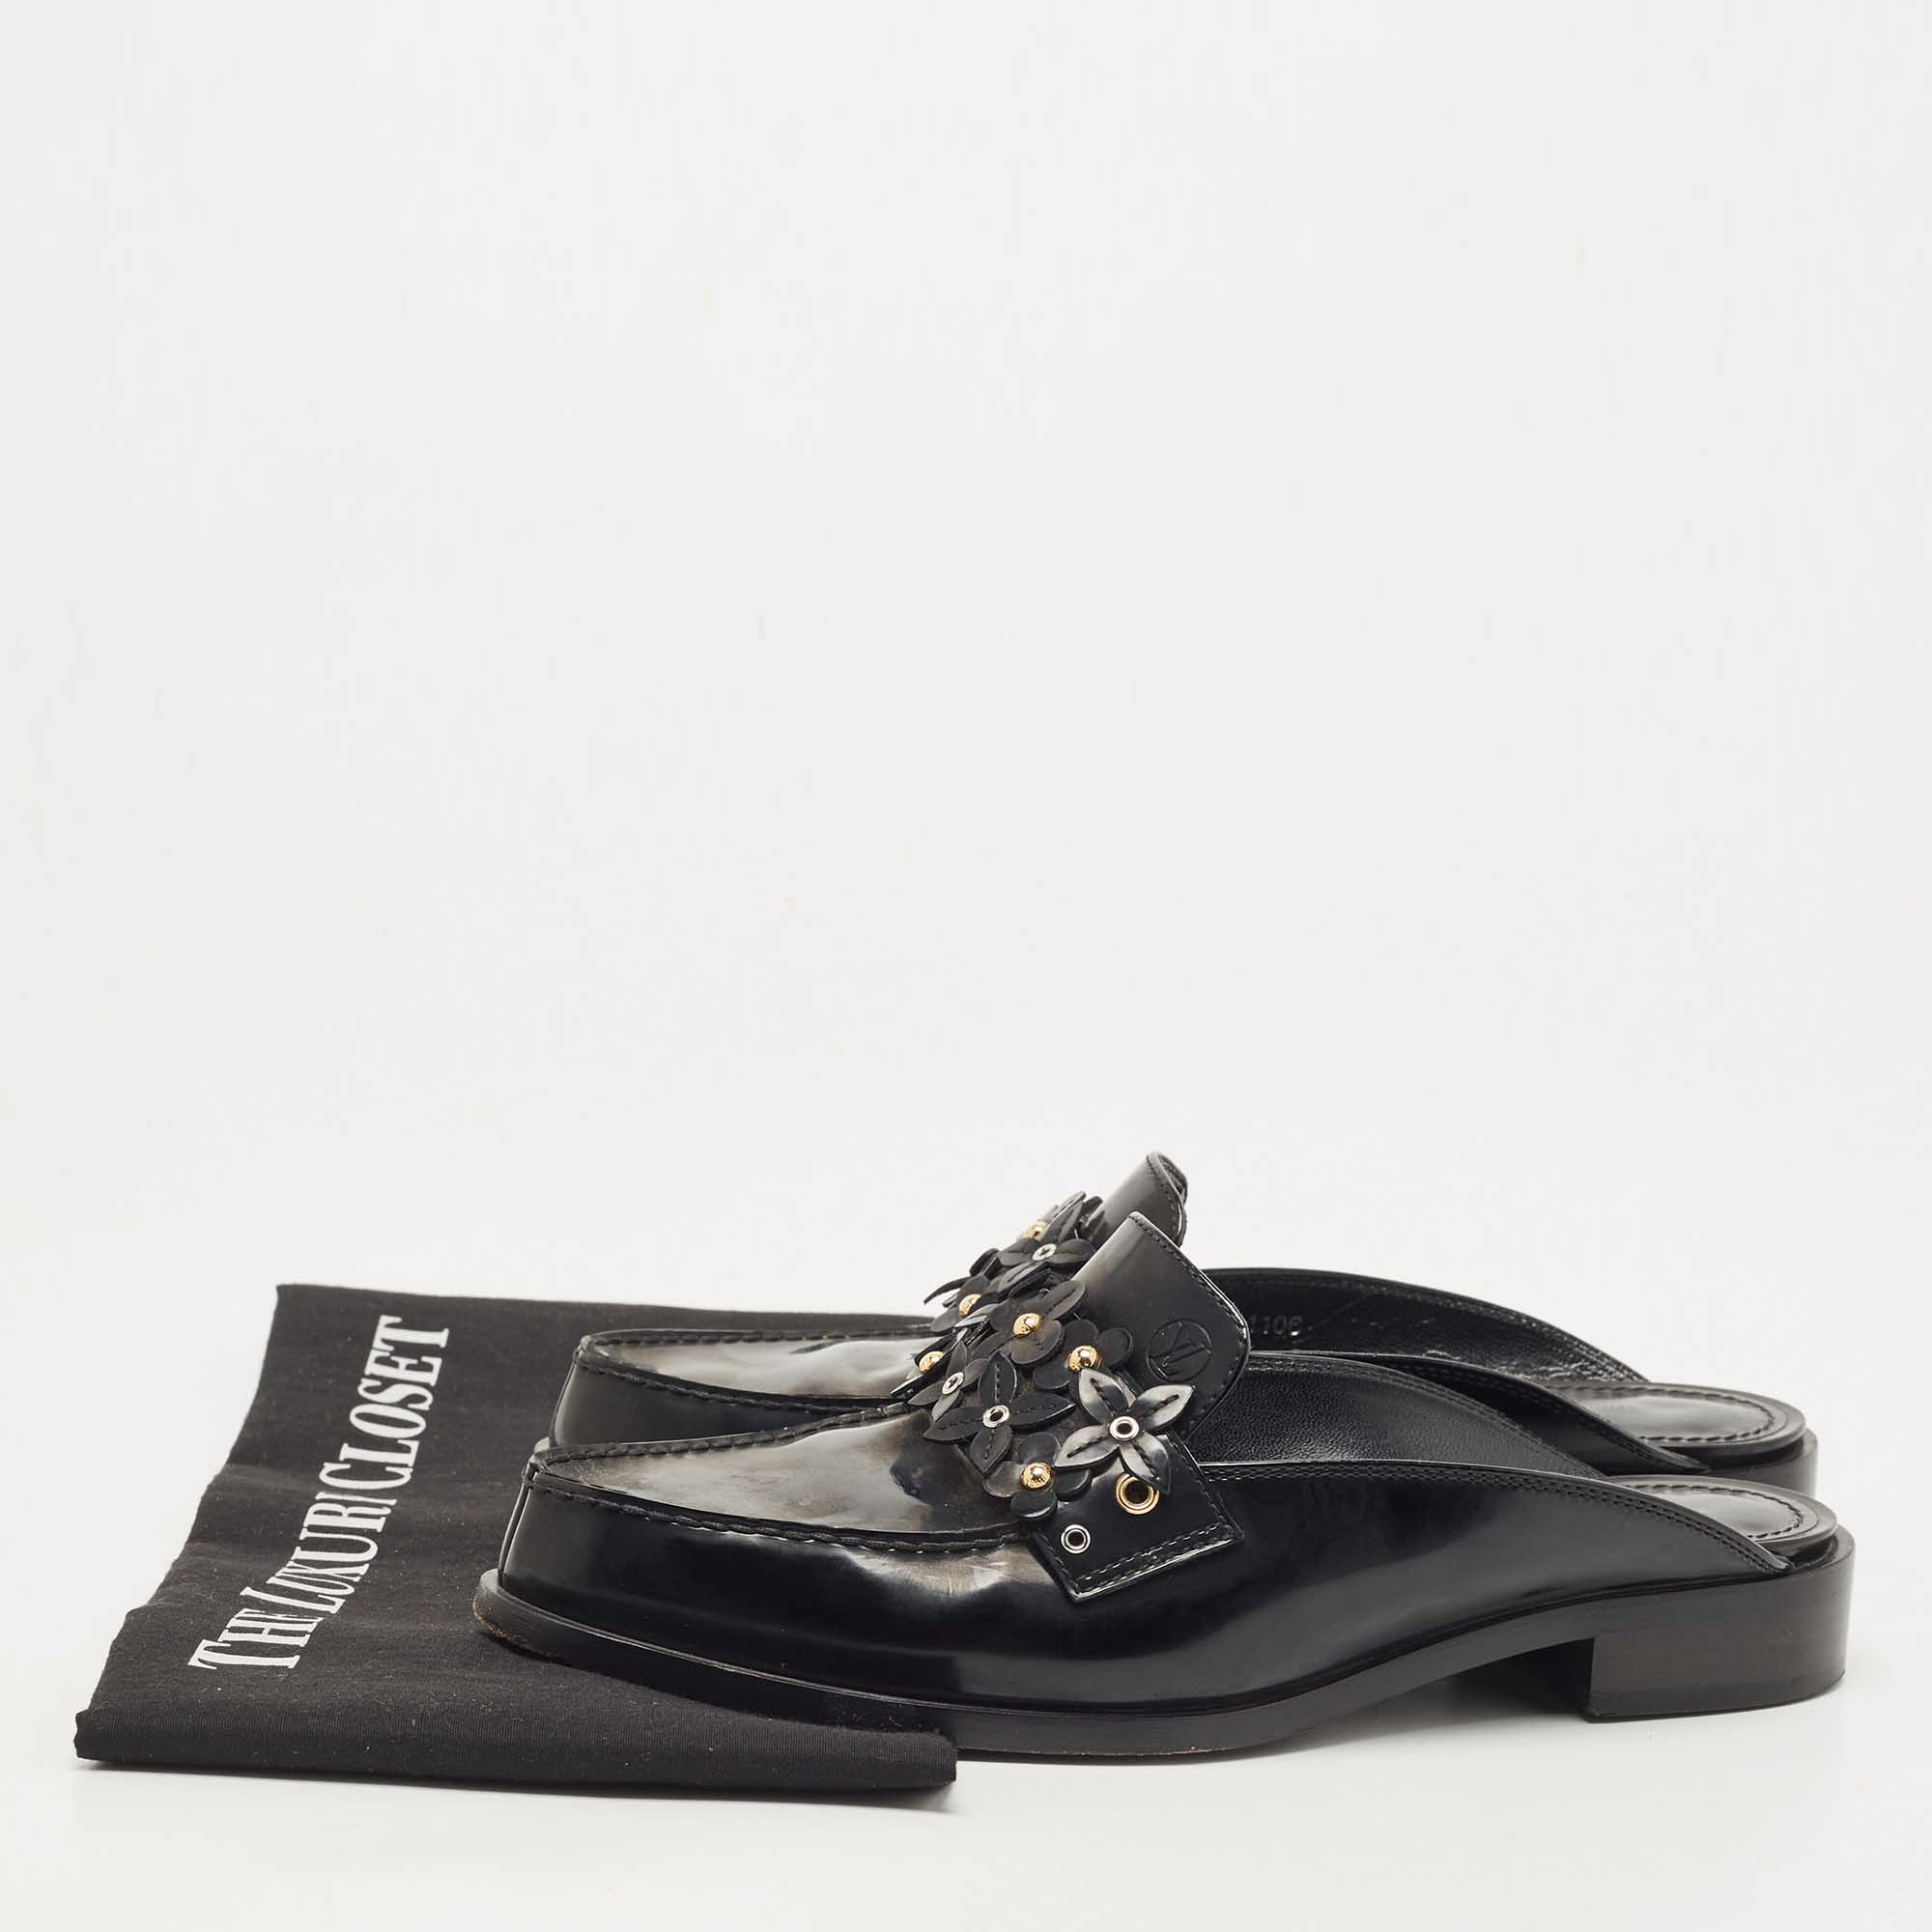 Louis Vuitton Black Leather Studded Flower Applique Mules Size 37.5